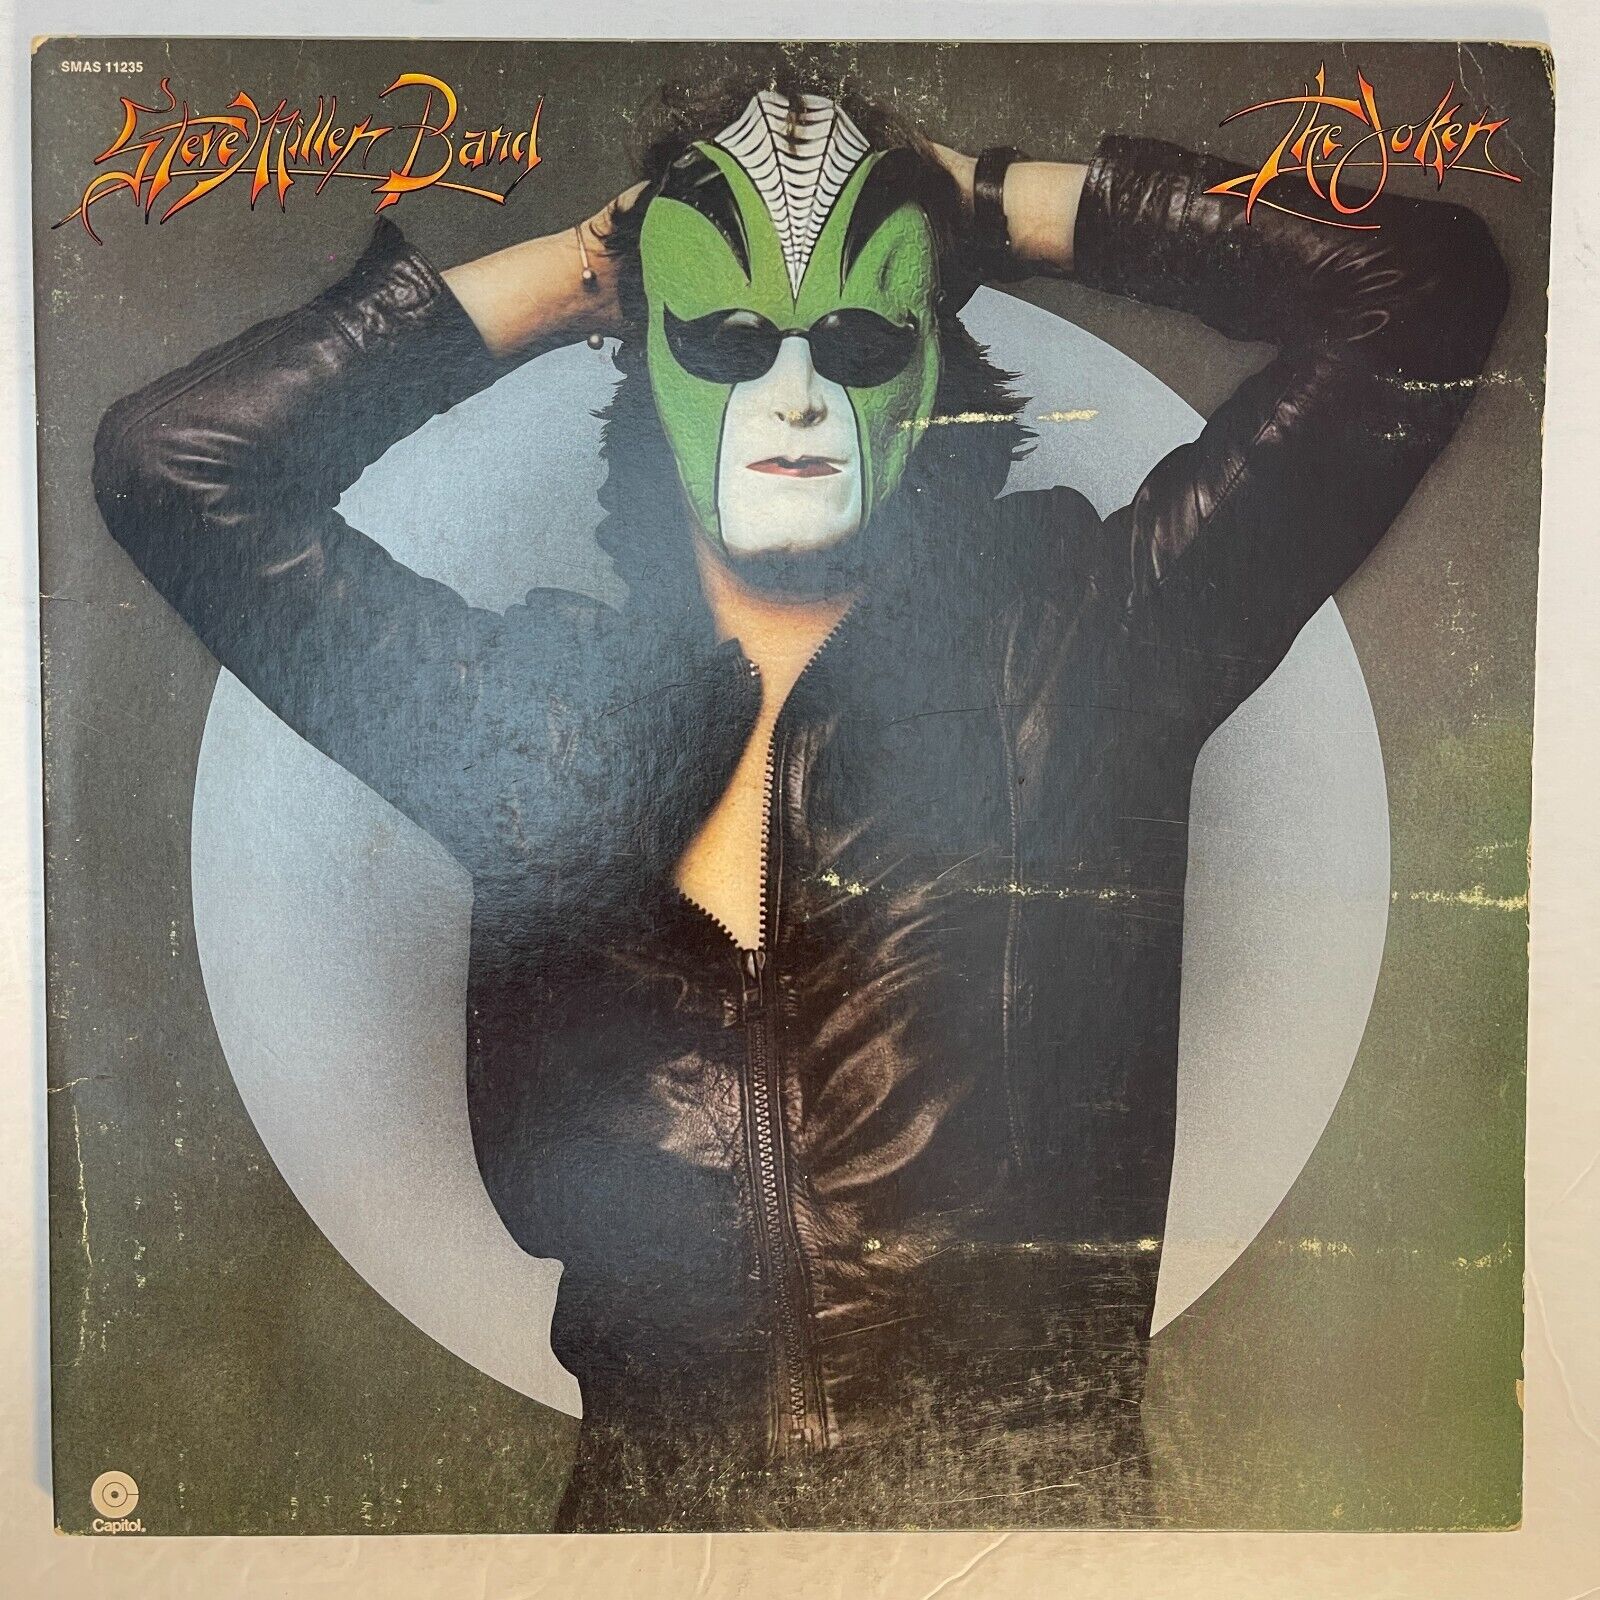 Steve Miller Band ‎– The Joker Vinyl, LP 1975 Capitol Records ‎– SMAS 11235